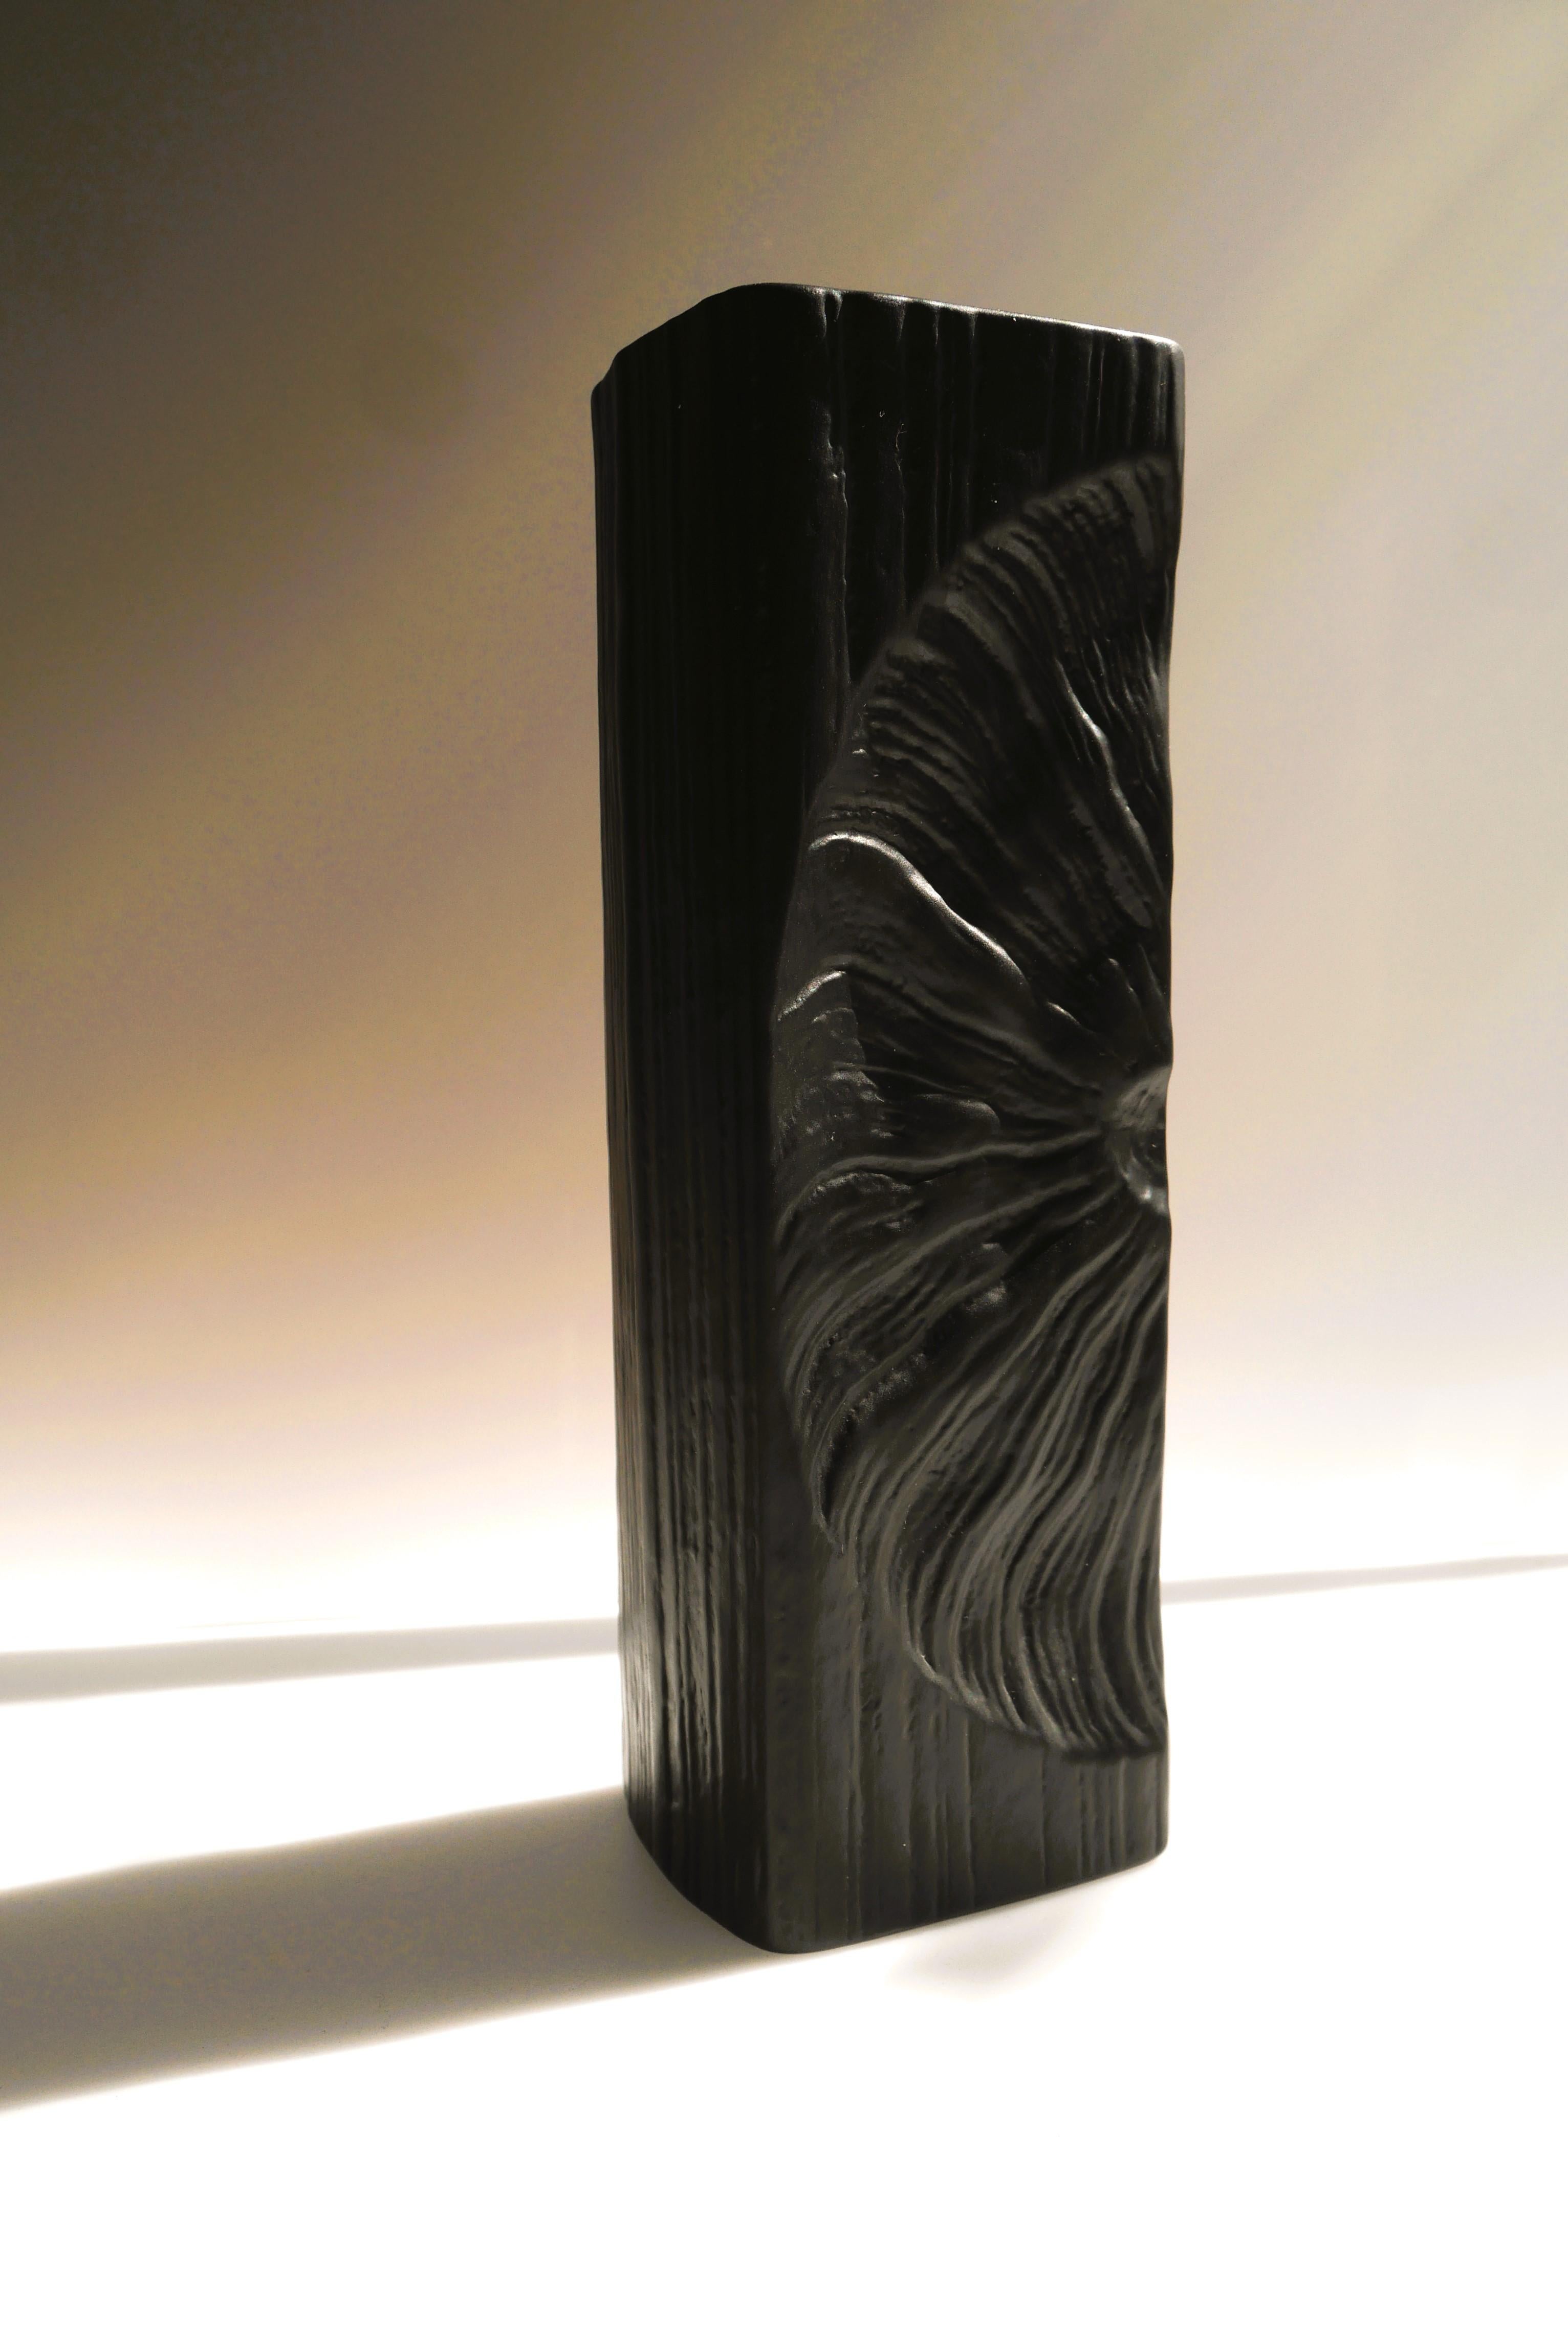 Eine fantastische Op-Art-Vase aus Biskuitporzellan der Studio-Linie Rosenthal, hergestellt von dem talentierten Martin Freyer, Deutschland. Eine ziemlich große schwarze Keramikvase mit unglaublichem Design. Die Vase ist ein Kunstwerk. Sie hat